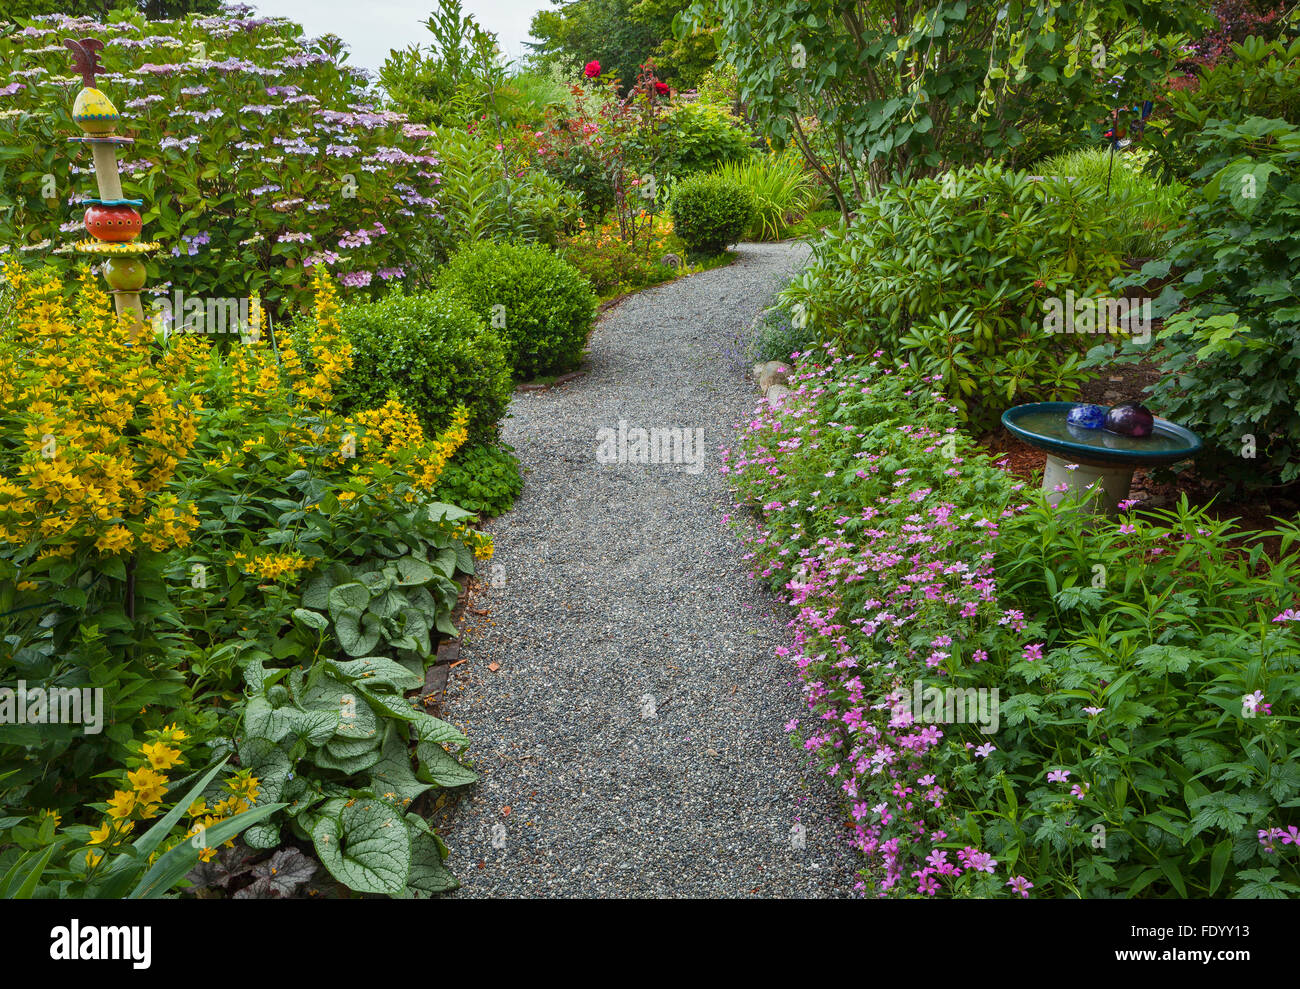 Maury-Vashon Island, WA: Kies im Ferienhaus Sommergarten mit Geranien Weg; Gilbweiderich; Hortensien und brunnera Stockfoto